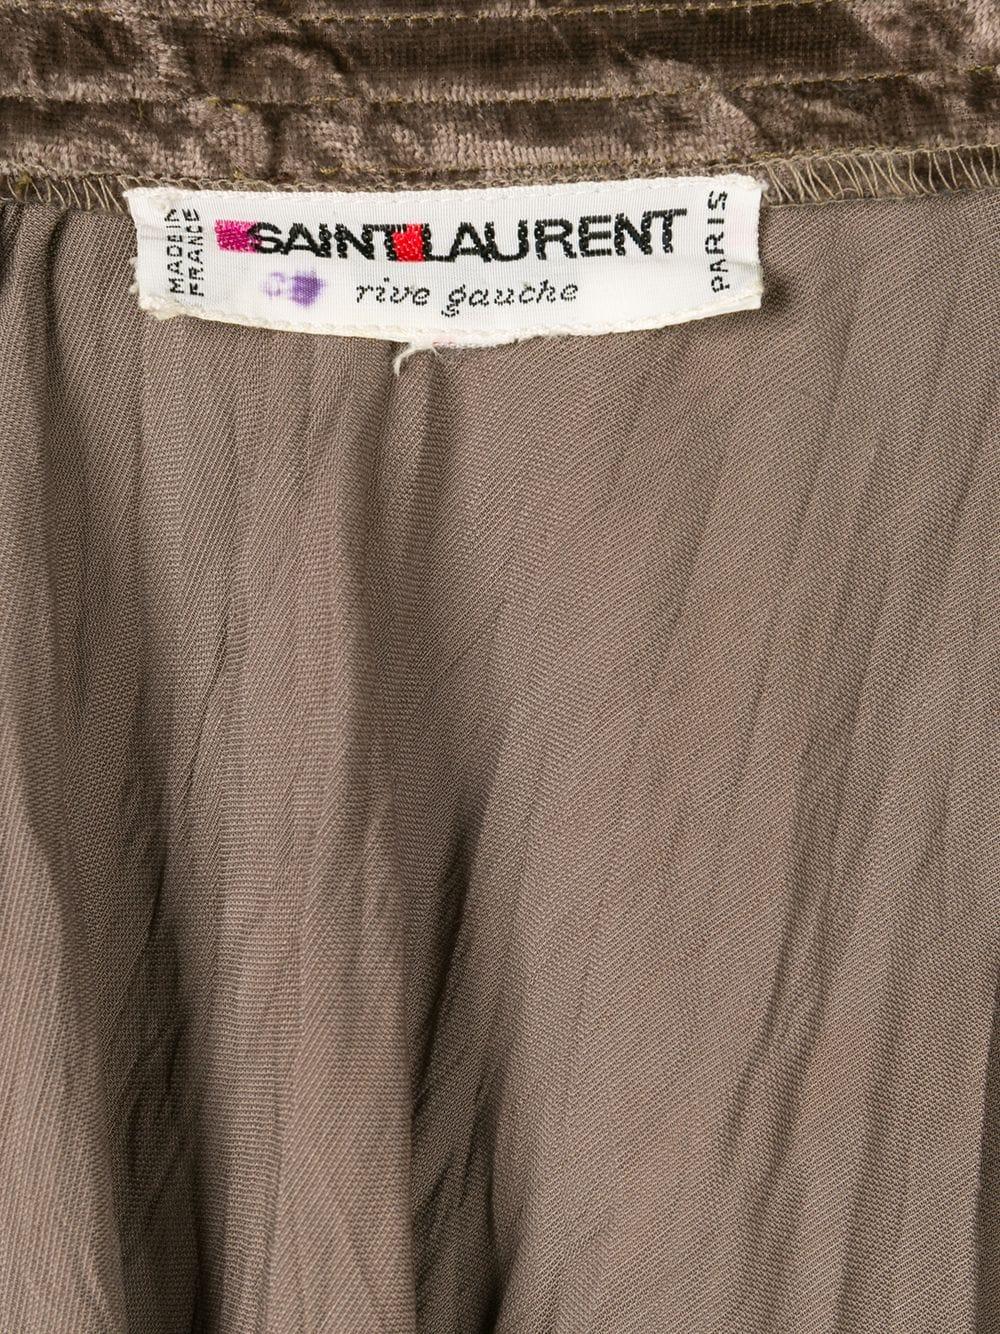 Women's Iconic 1970 Yves Saint Laurent YSL Evening Crushed Velvet Skirt